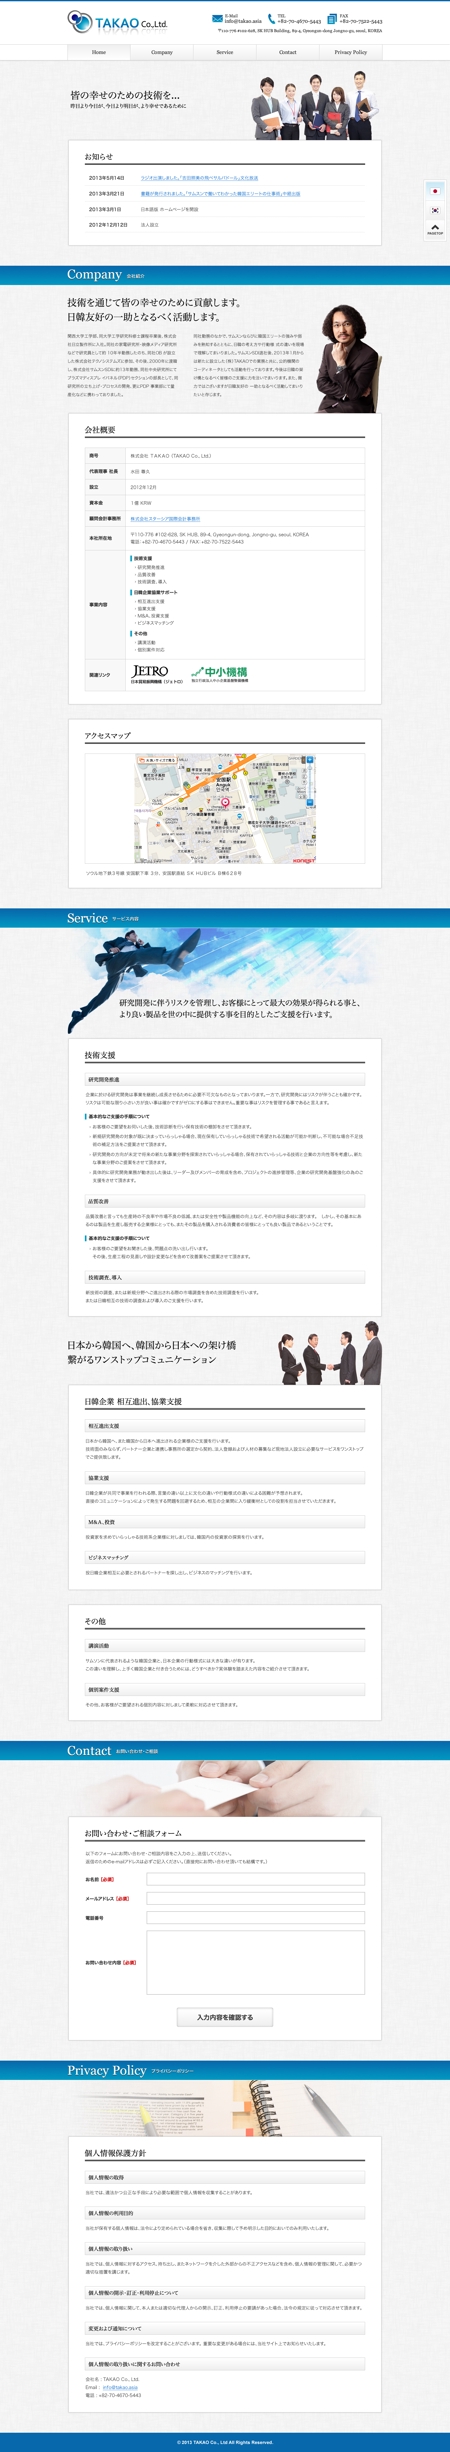 八剣華菱 (naruheat)さんの技術コンサルティング企業ＴＡＫＡＯ CO.,Ltd. ： ホームページデザインのリニューアルへの提案